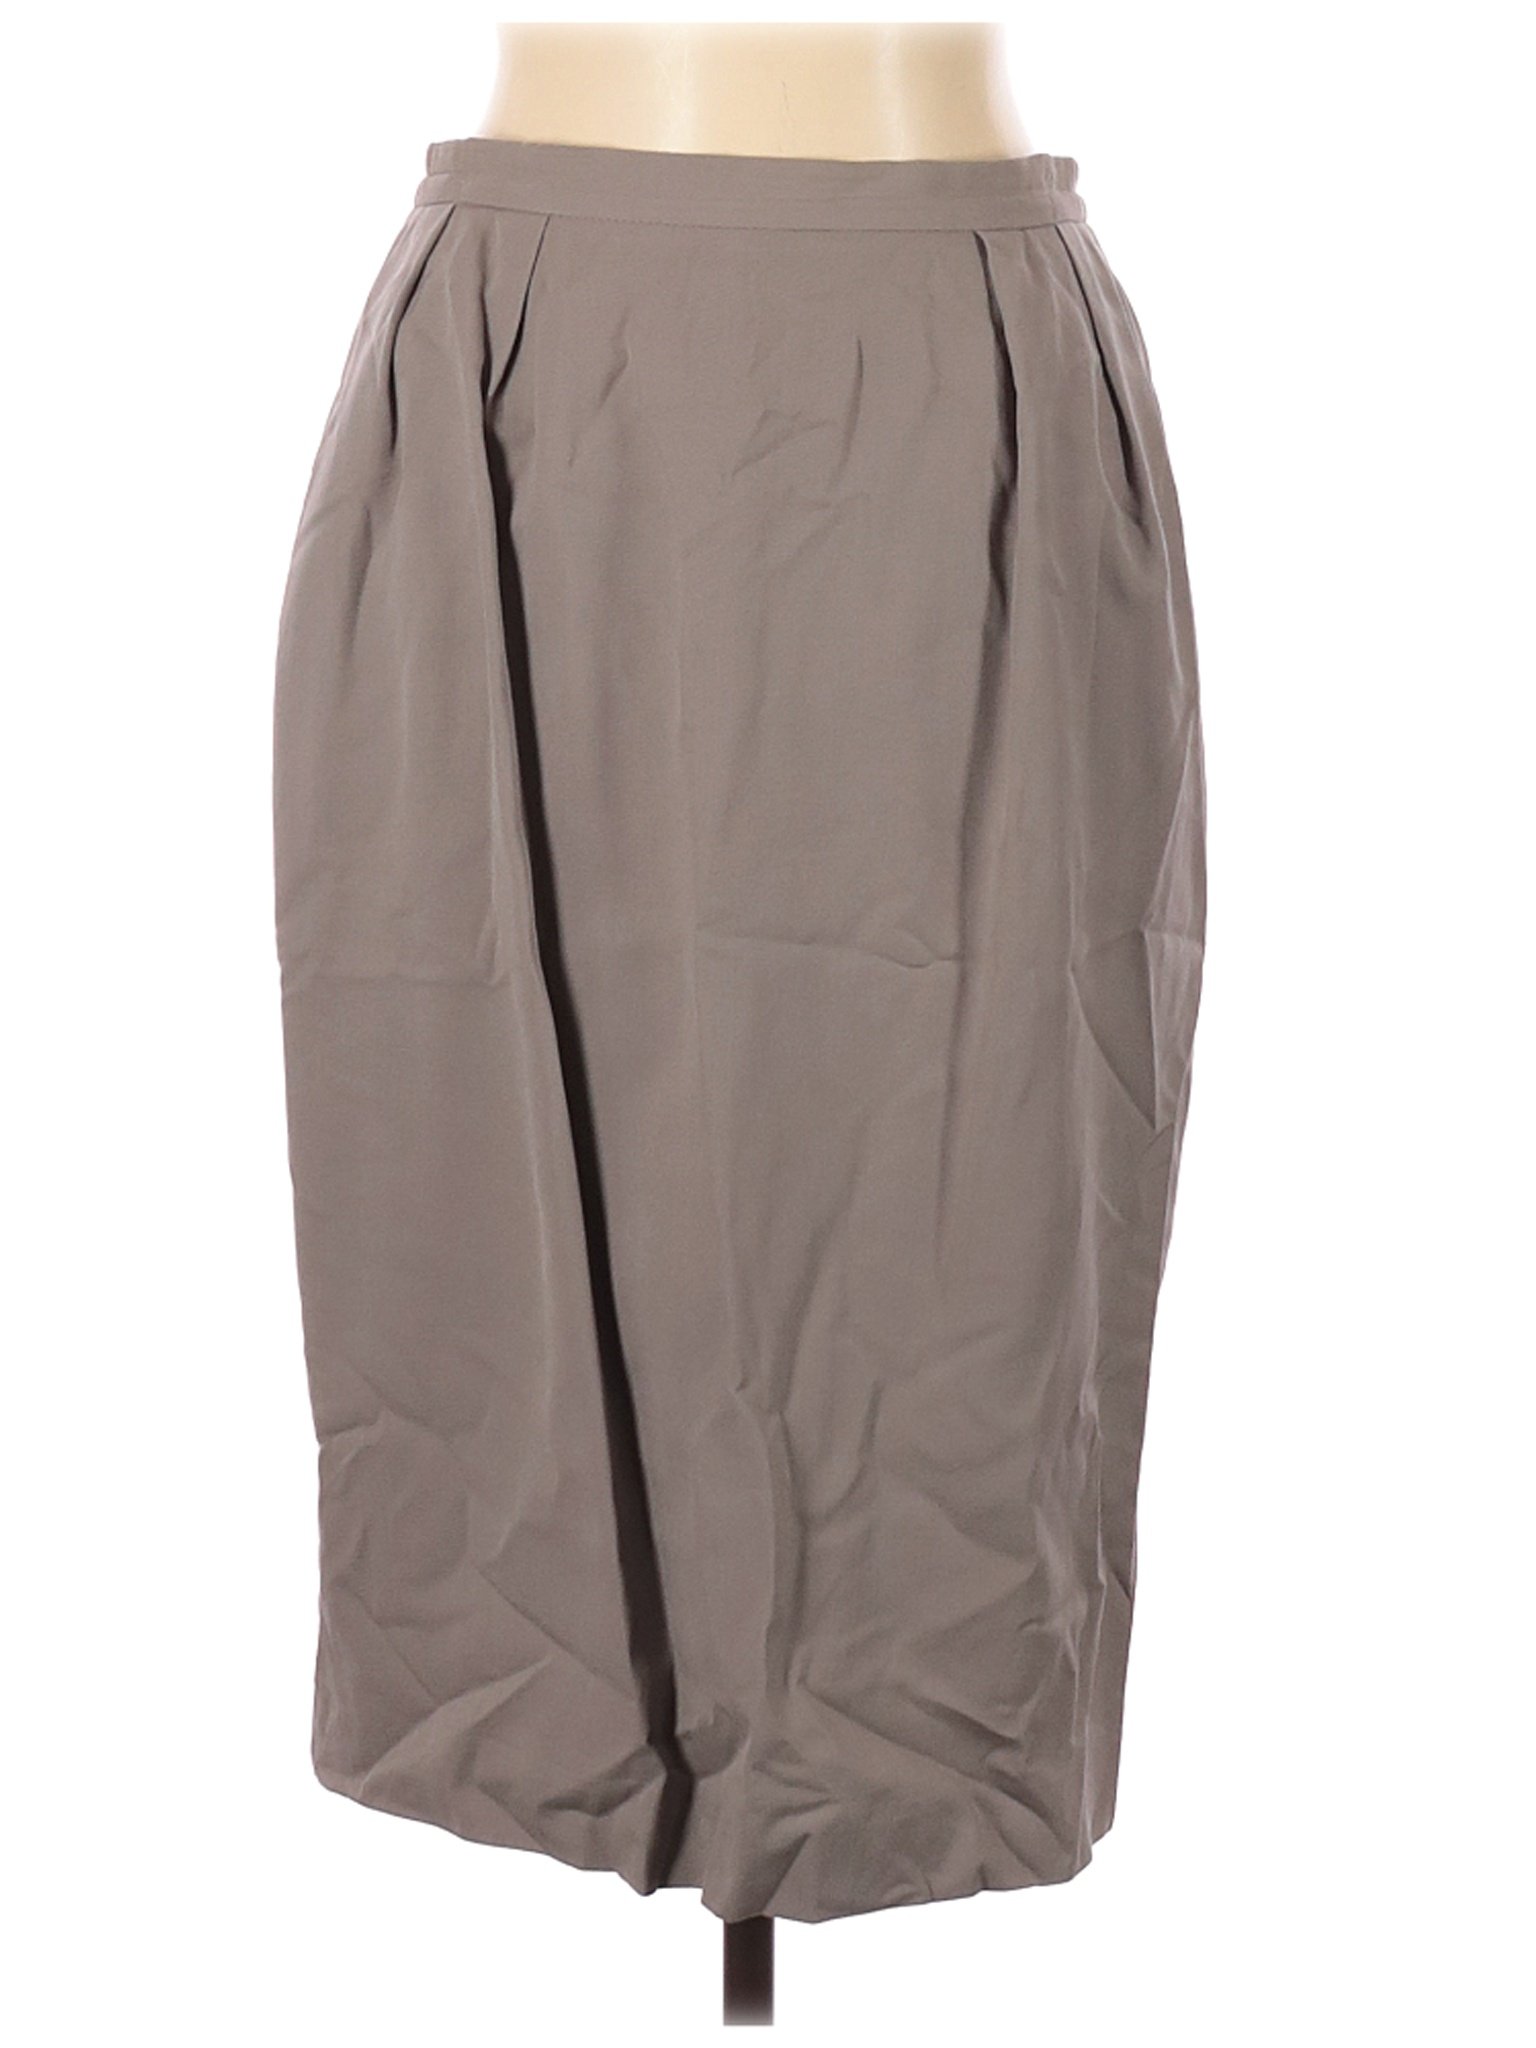 Unbranded Women Gray Wool Skirt 12 | eBay